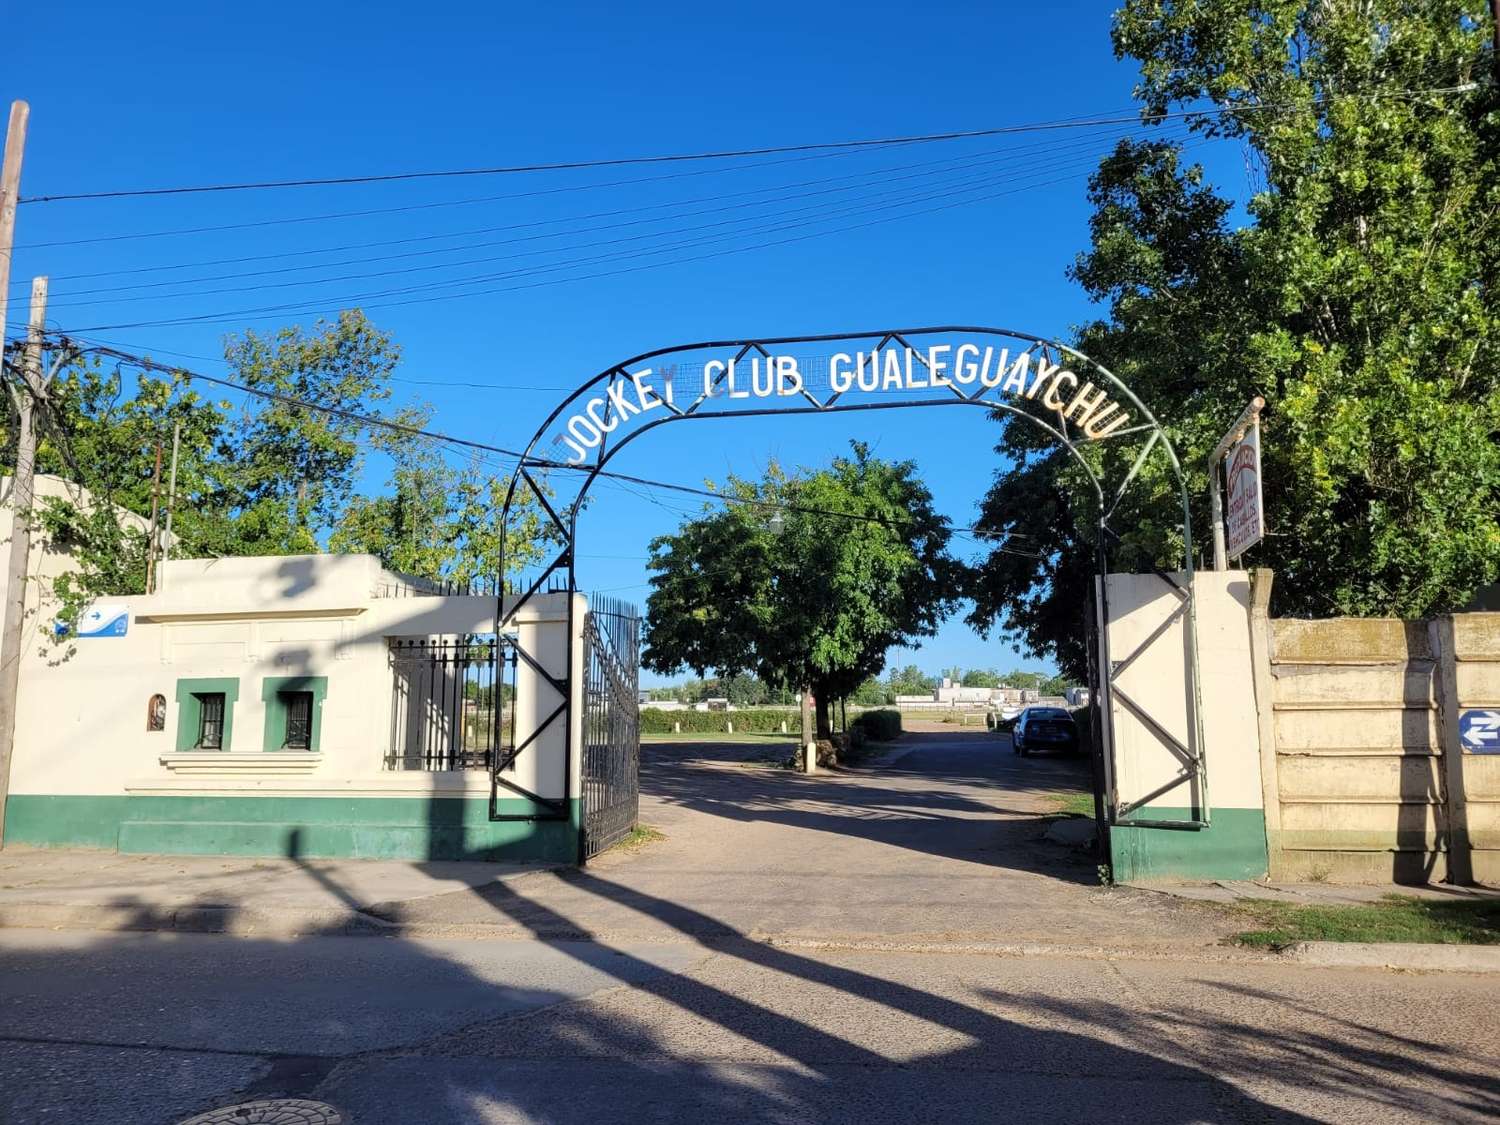 Crisis en el Jockey Club Gualeguaychú: Denuncian malos manejos y desvíos de fondos